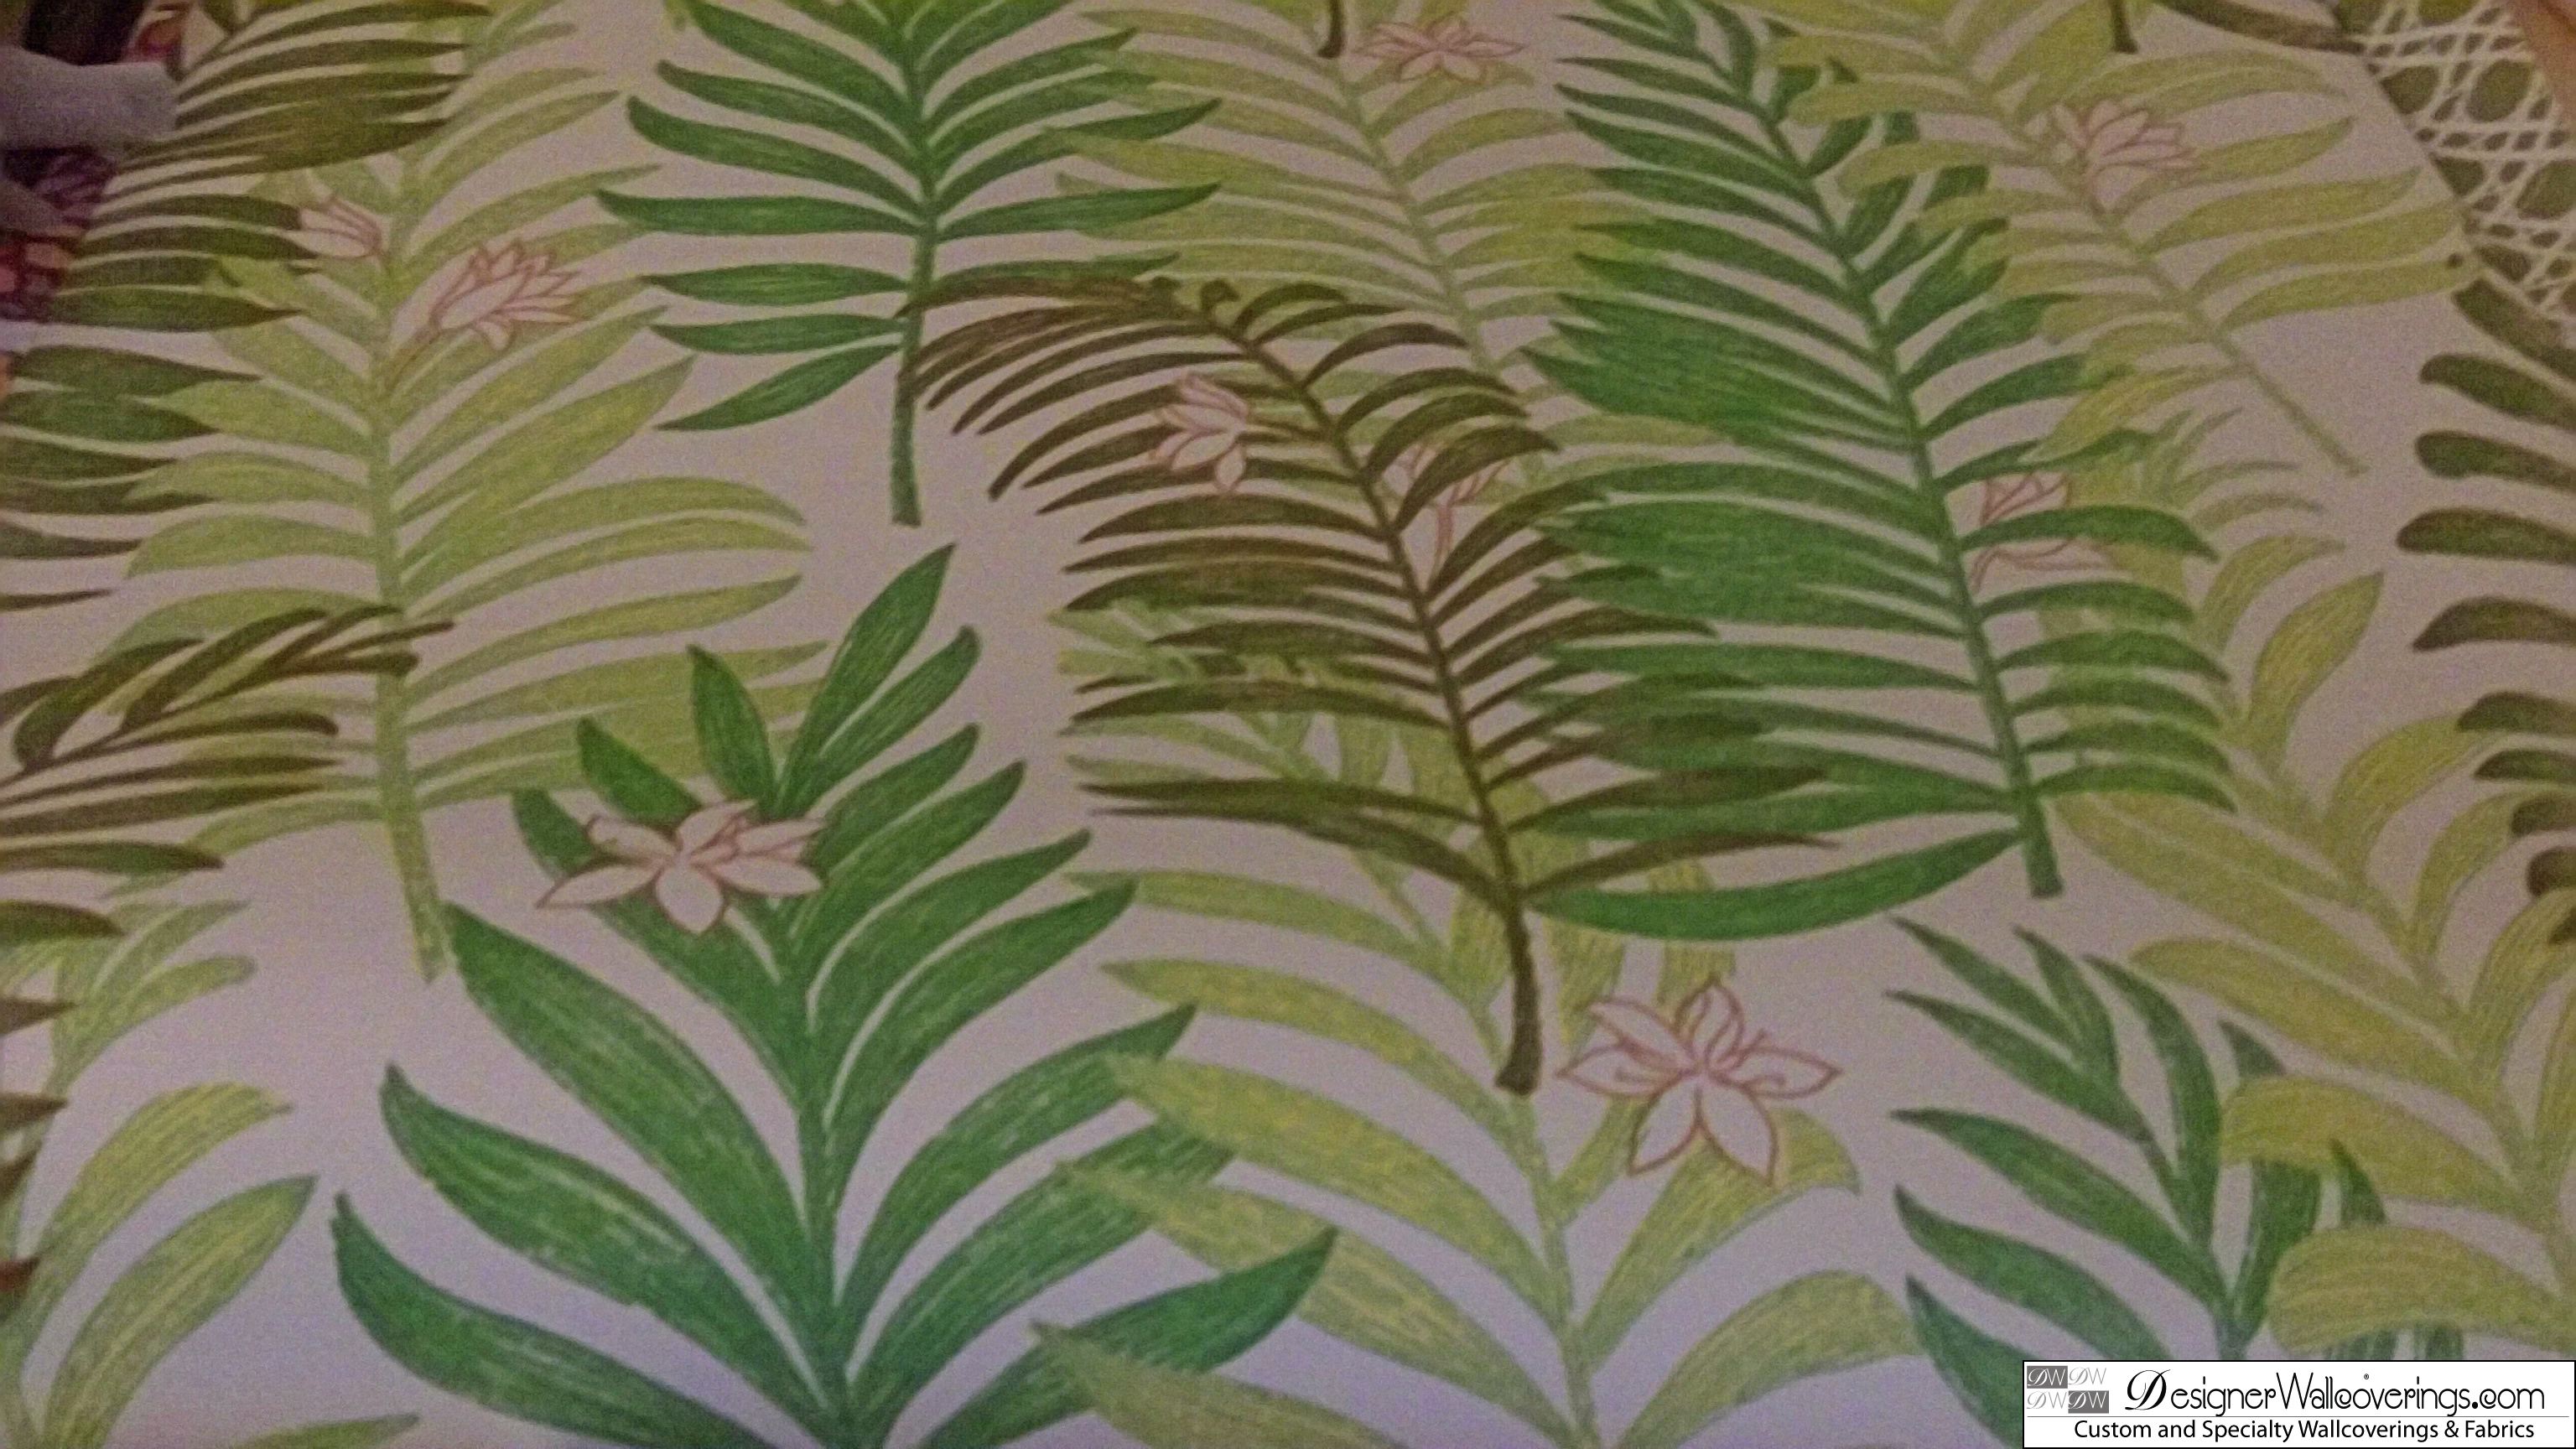 S Vintage Tropical Fern Wallpaper Dig Designer